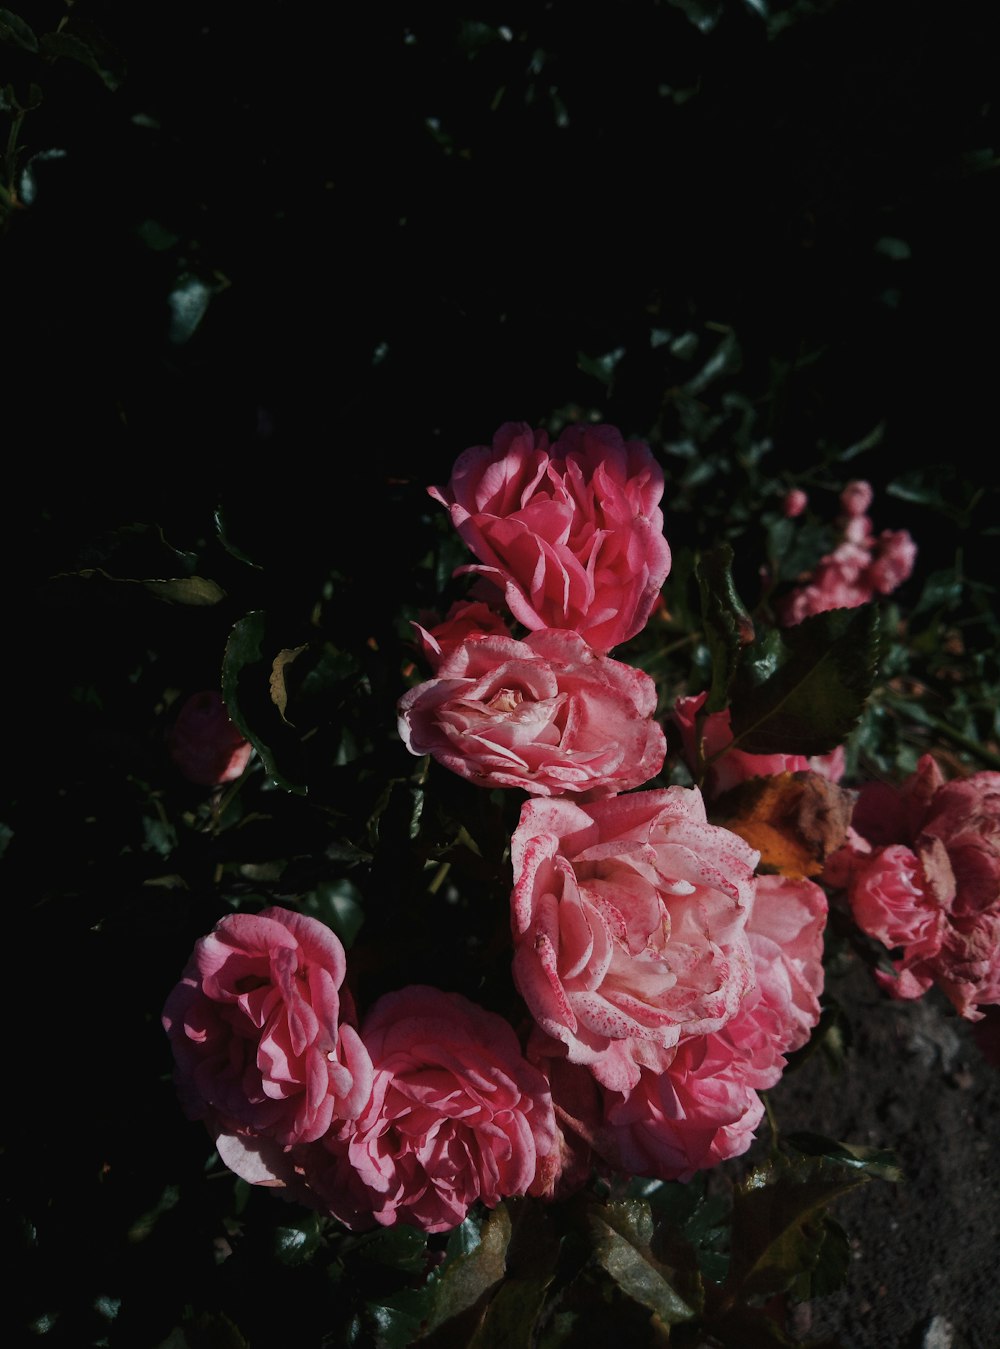 pink-petaled flowers